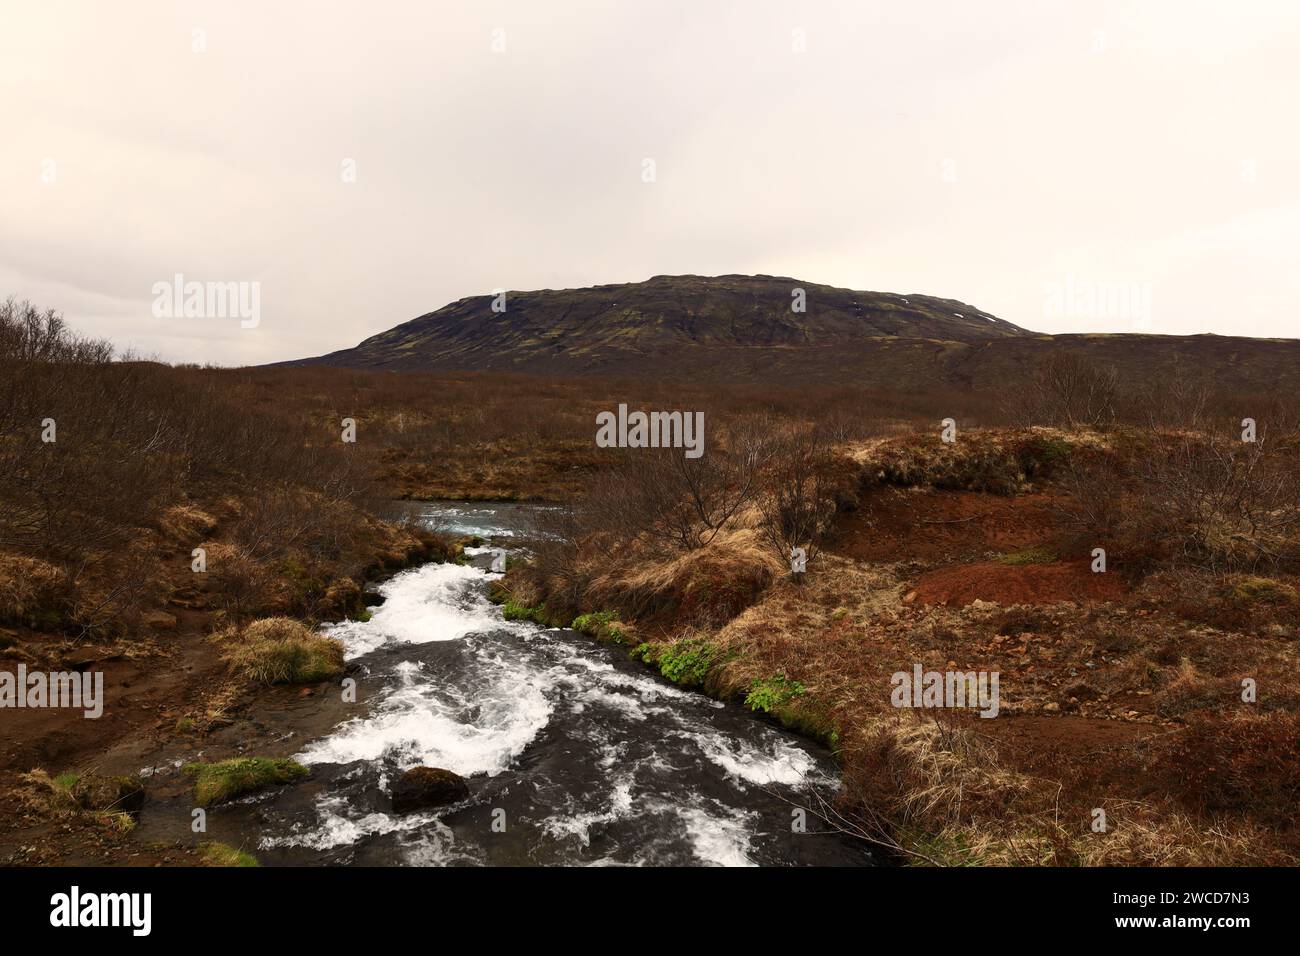 Brúará es un río de manantial en el oeste de Islandia que corre por los límites de los municipios Biskupstungur y Grímsnes Foto de stock